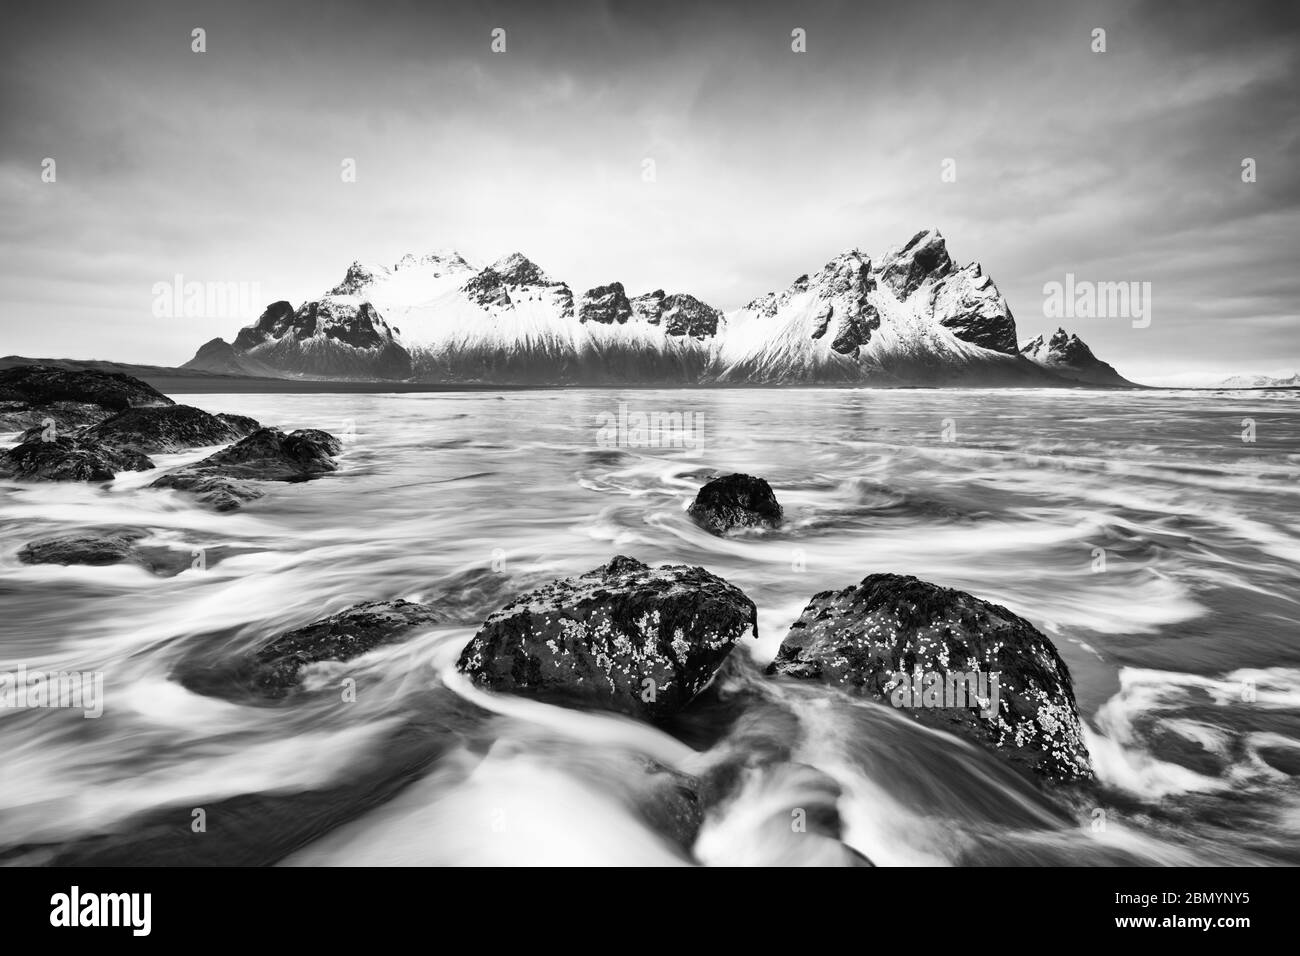 Image en noir et blanc d'une formation de montagne enneigée reflétée dans l'eau d'une plage de sable noir de lave, dans les vagues de premier plan lavées autour de b Banque D'Images